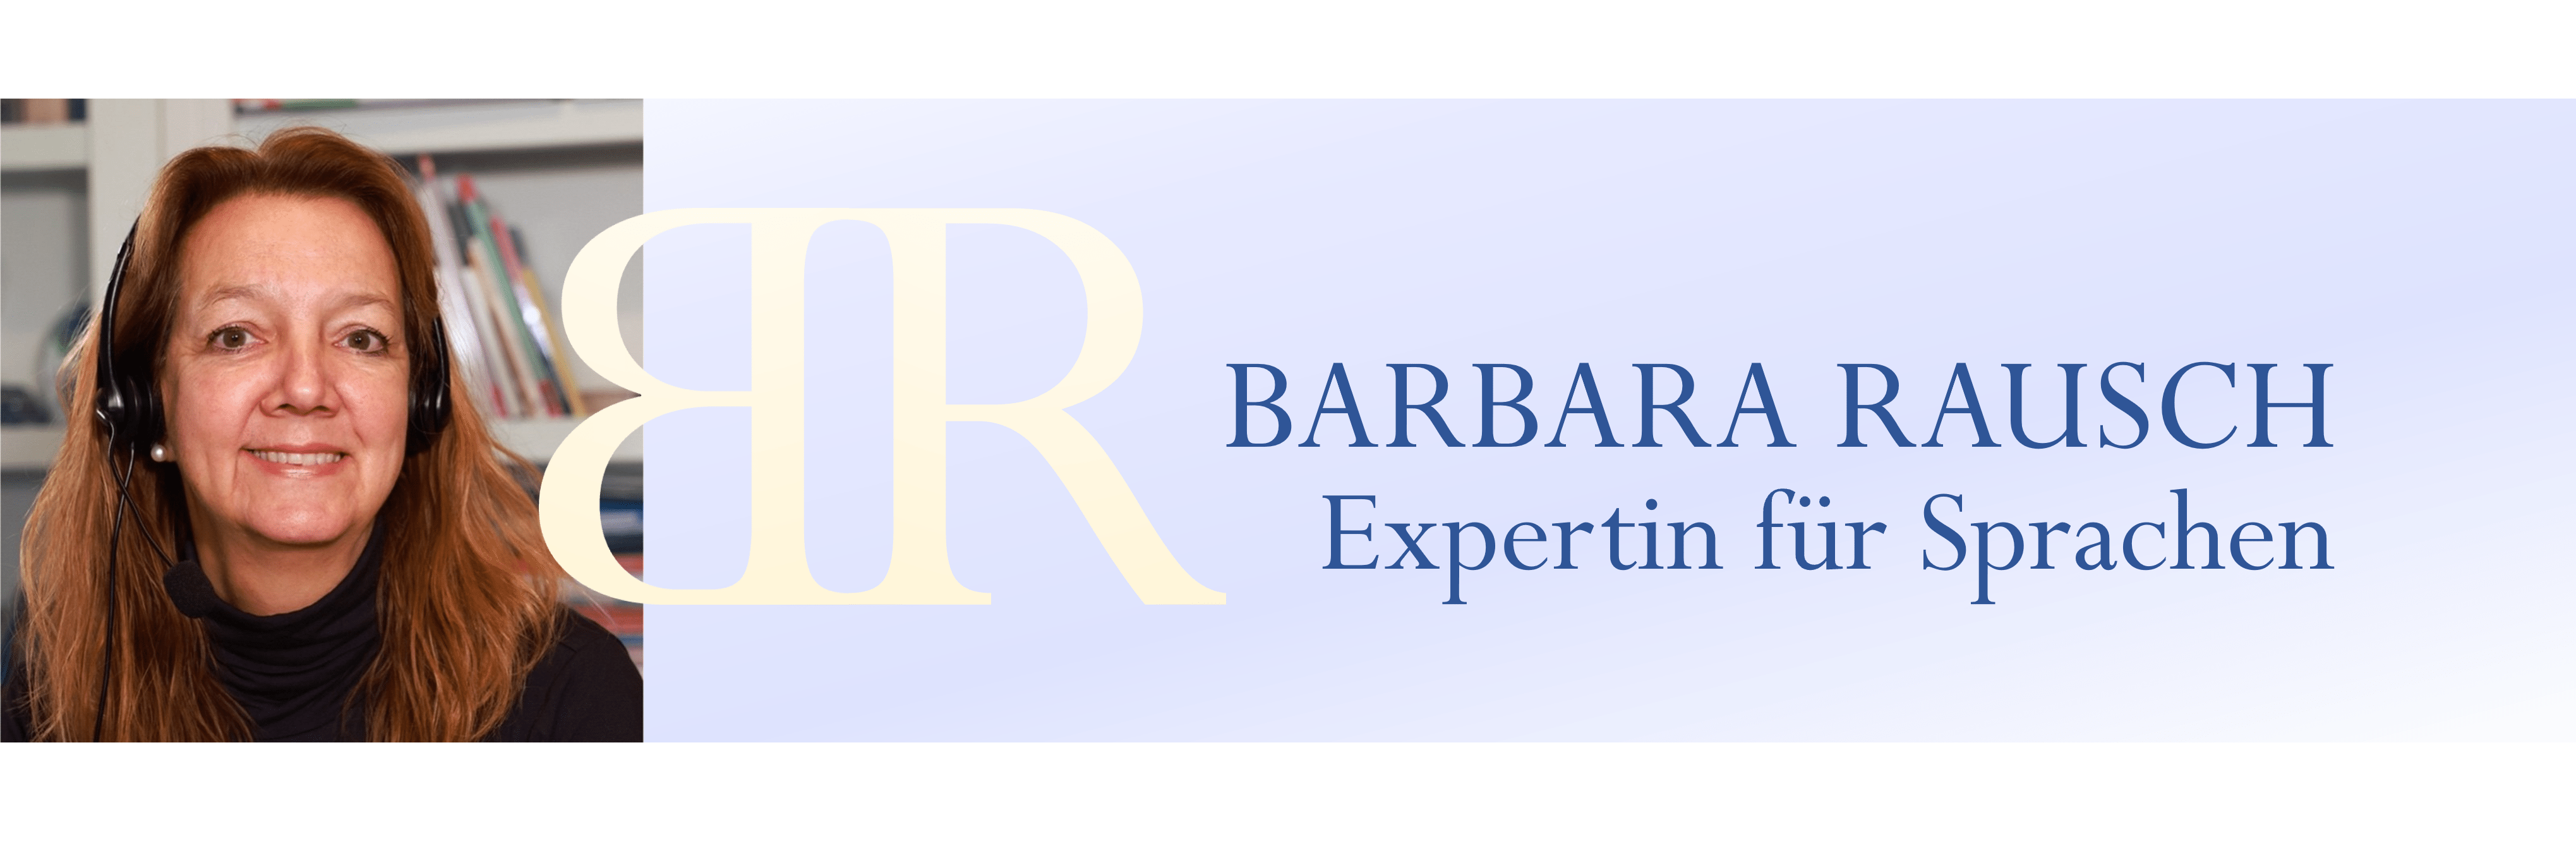 Barbara Rausch Expertin für Sprachen